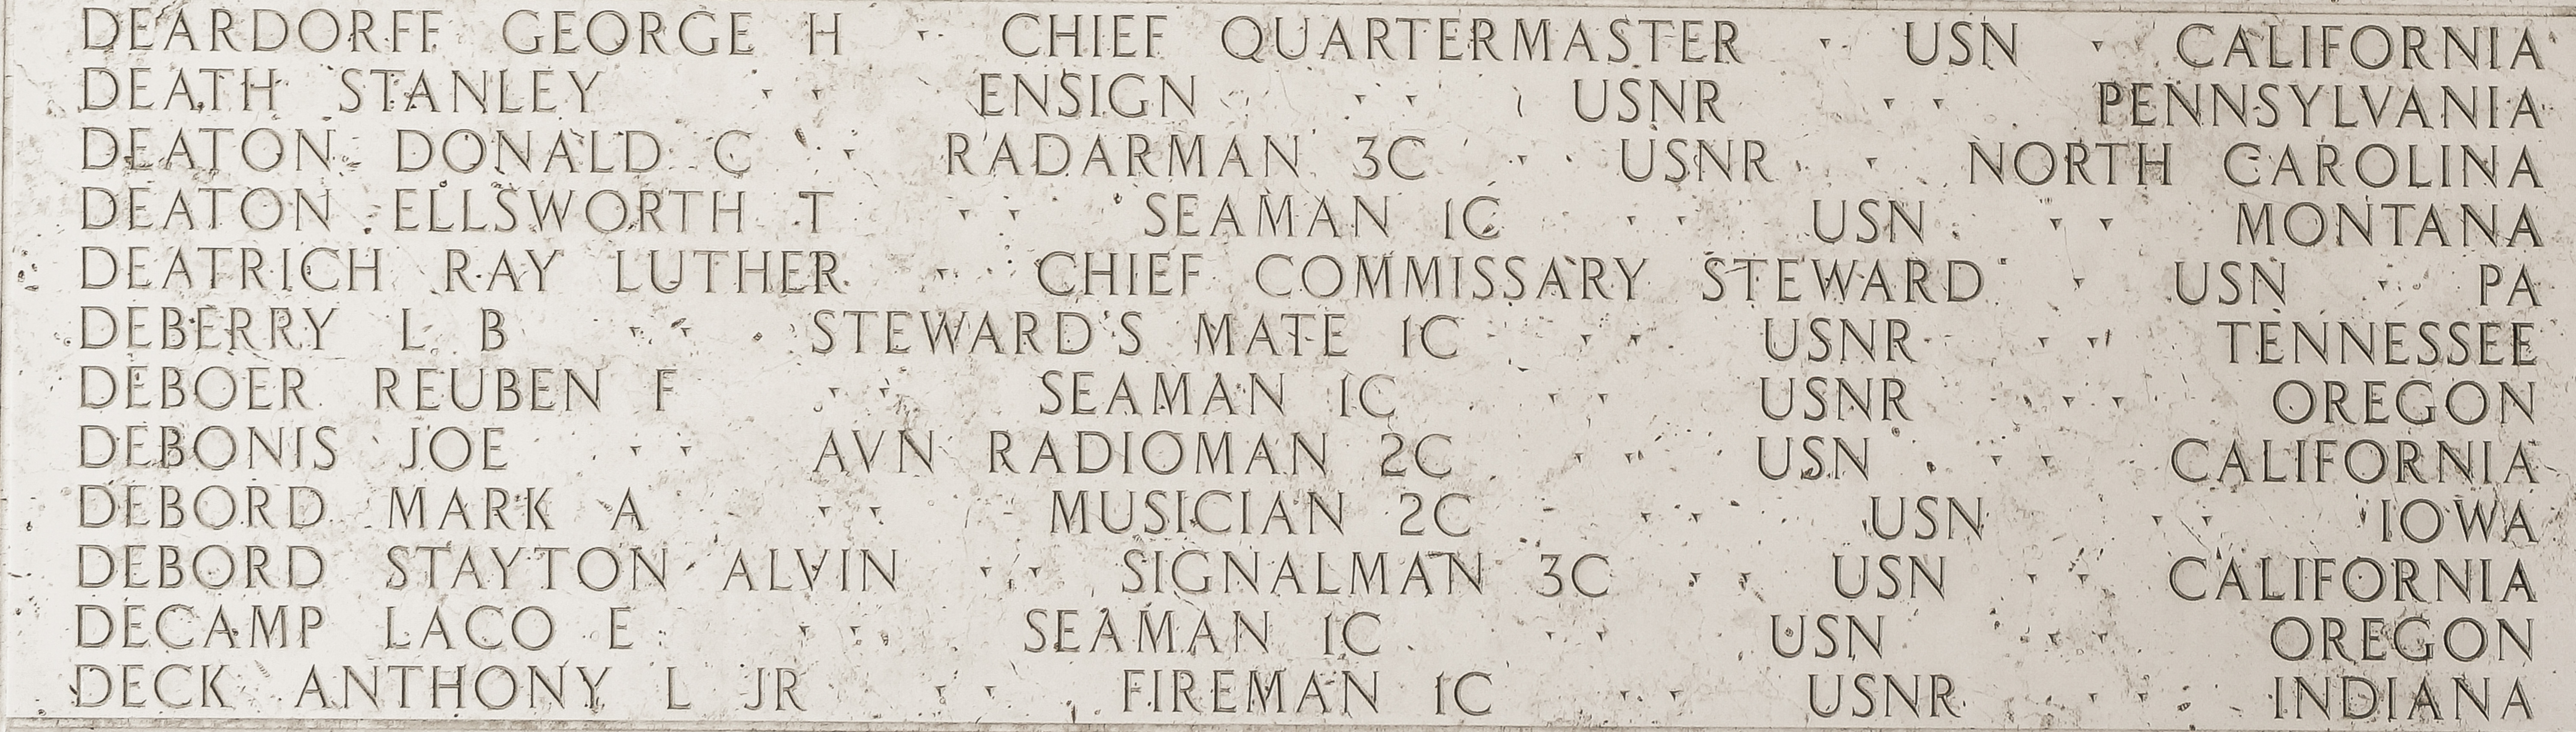 Reuben F. Deboer, Seaman First Class